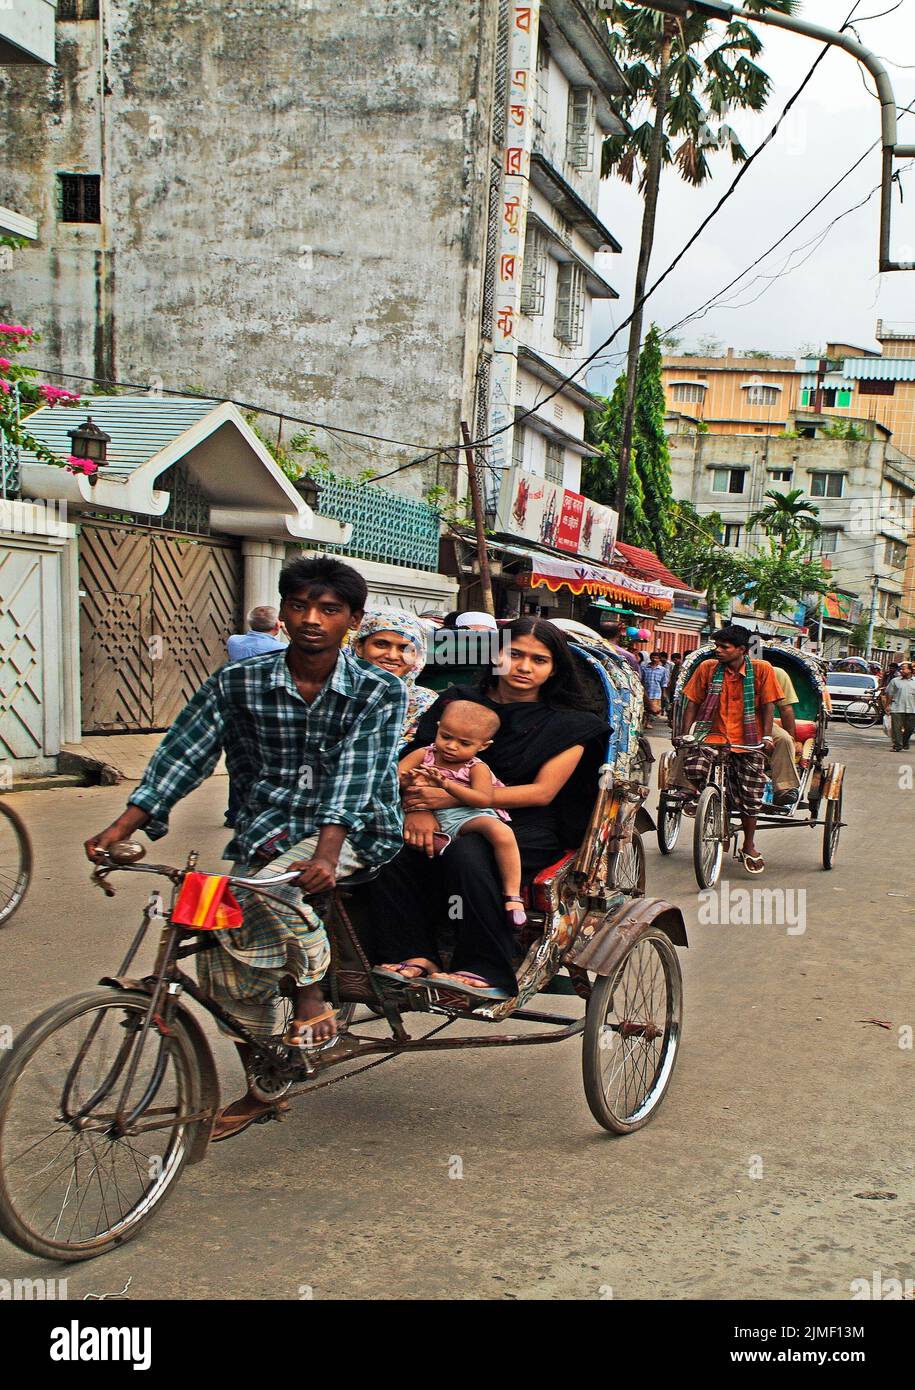 Dhaka, Bangladesh - 17 septembre 2007: Des personnes non identifiées dans le pousse-pousse à vélo traditionnel, un mode de transport habituel Banque D'Images